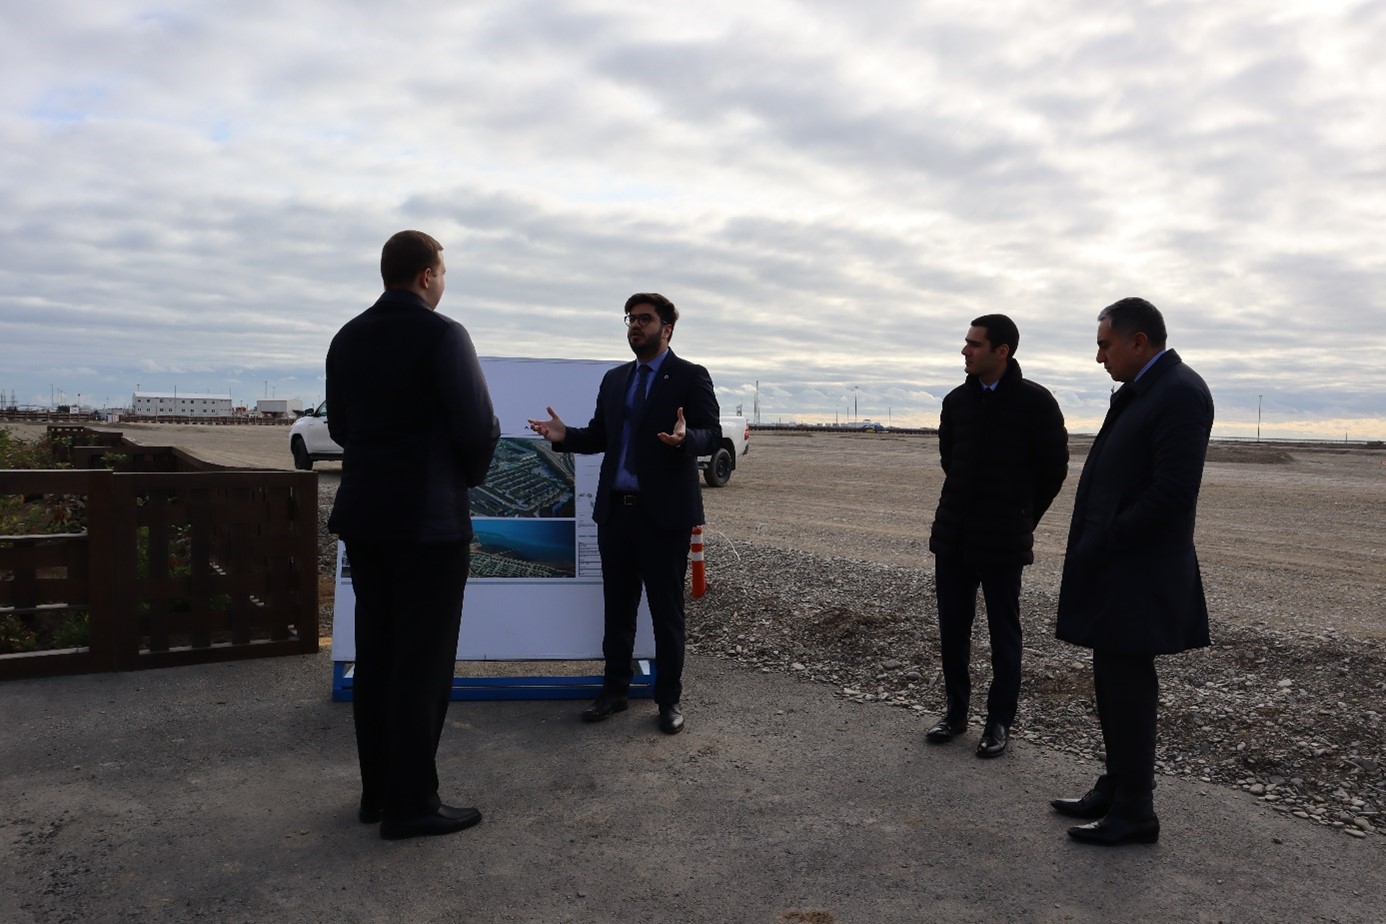 Besichtigung der Bauarbeiten in Alat: Hier entsteht ein neuer Business Hub der Kaspischen Region.